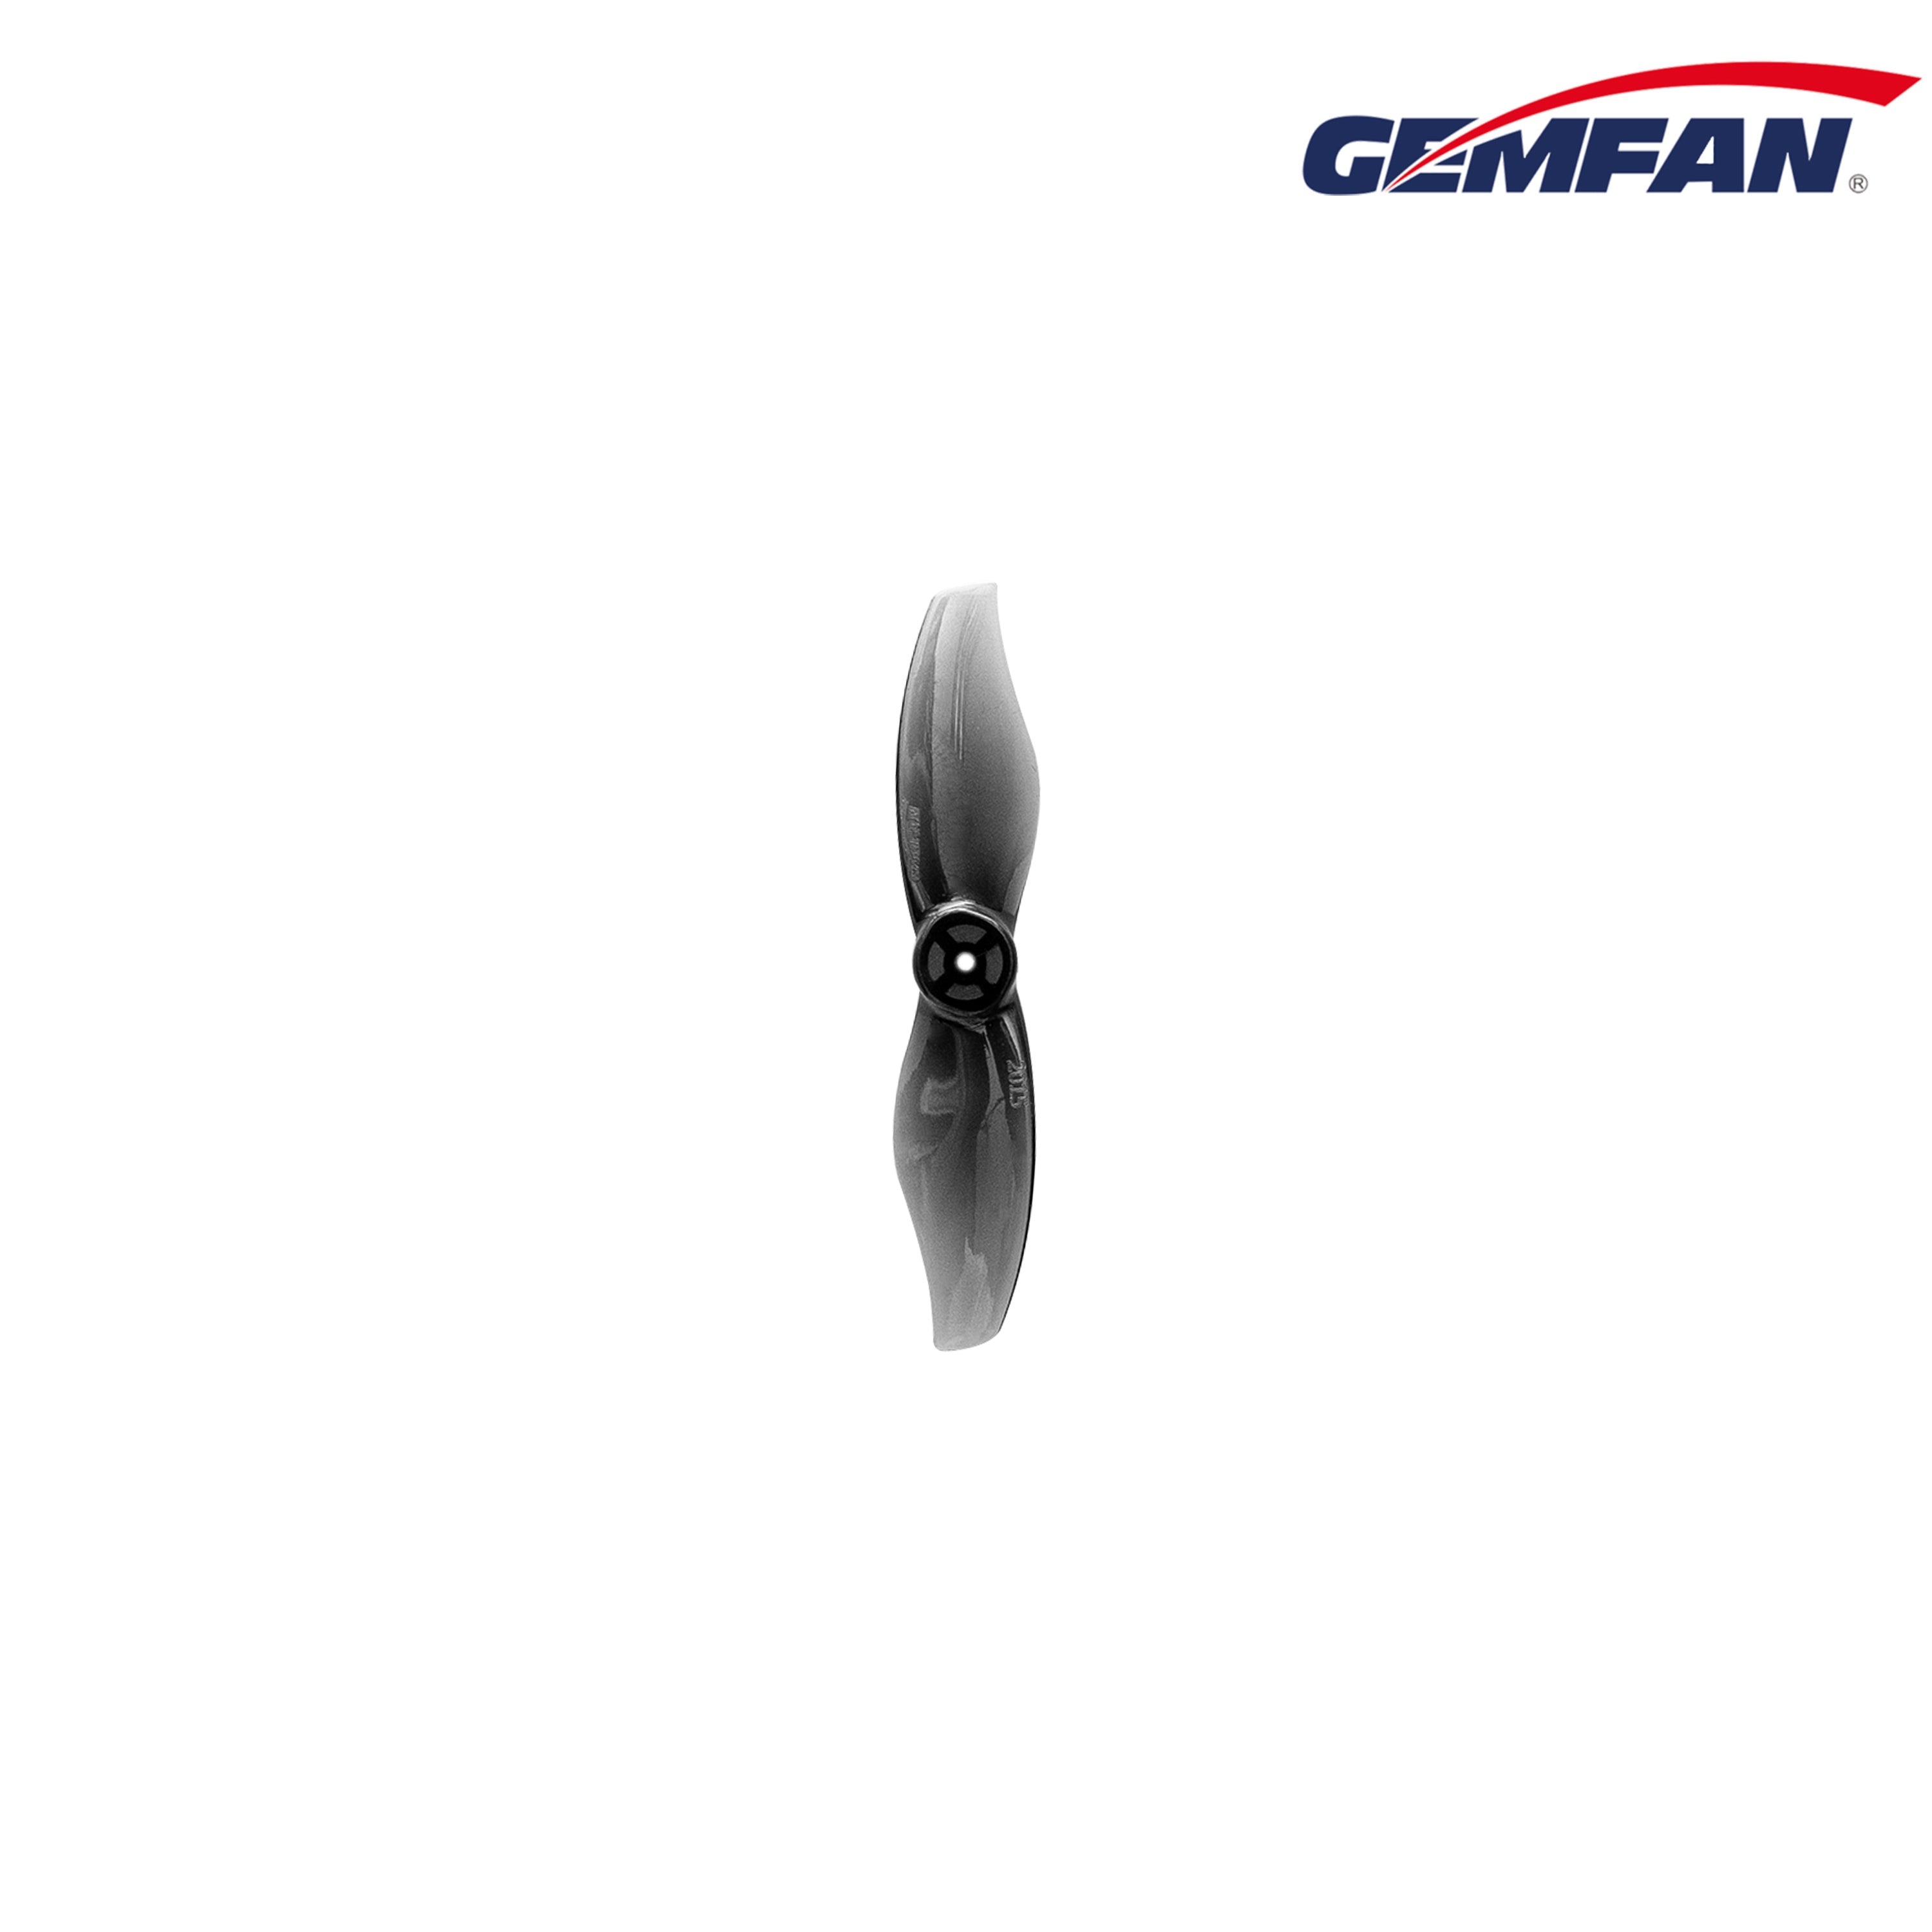 Gemfan Hurricane 2015-2 2" 2-Blade Propeller (4CW+4CCW)